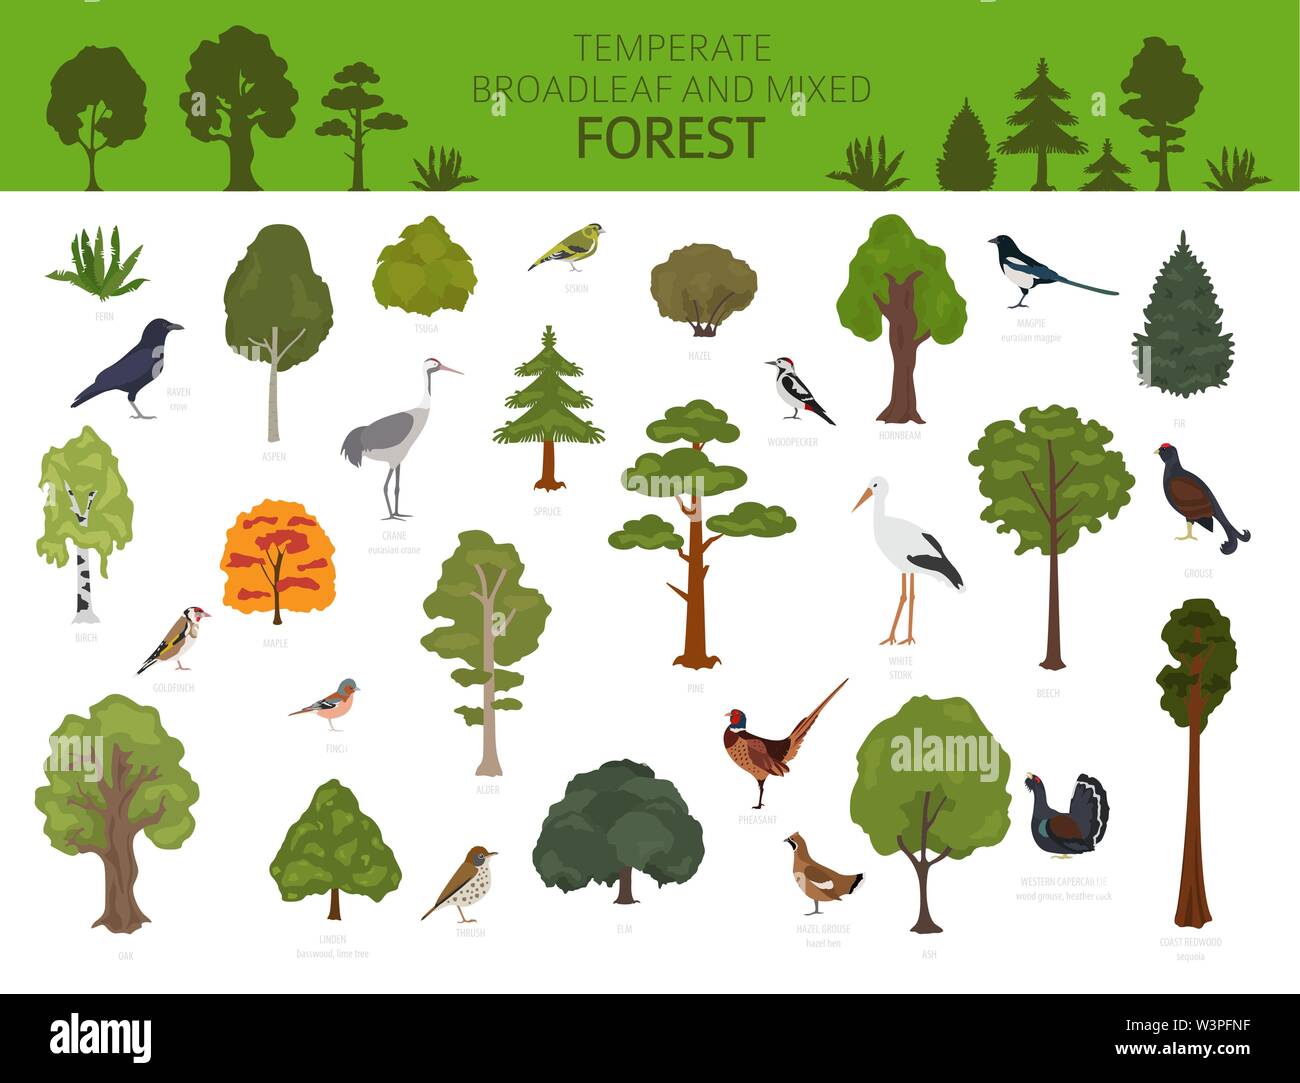 Gemäßigt breitblättrige Wald und Mischwald biome. Terrestrischen Ökosystem Weltkarte. Tiere, Vögel und Pflanzen Grafik Design. Vector Illustration Stock Vektor